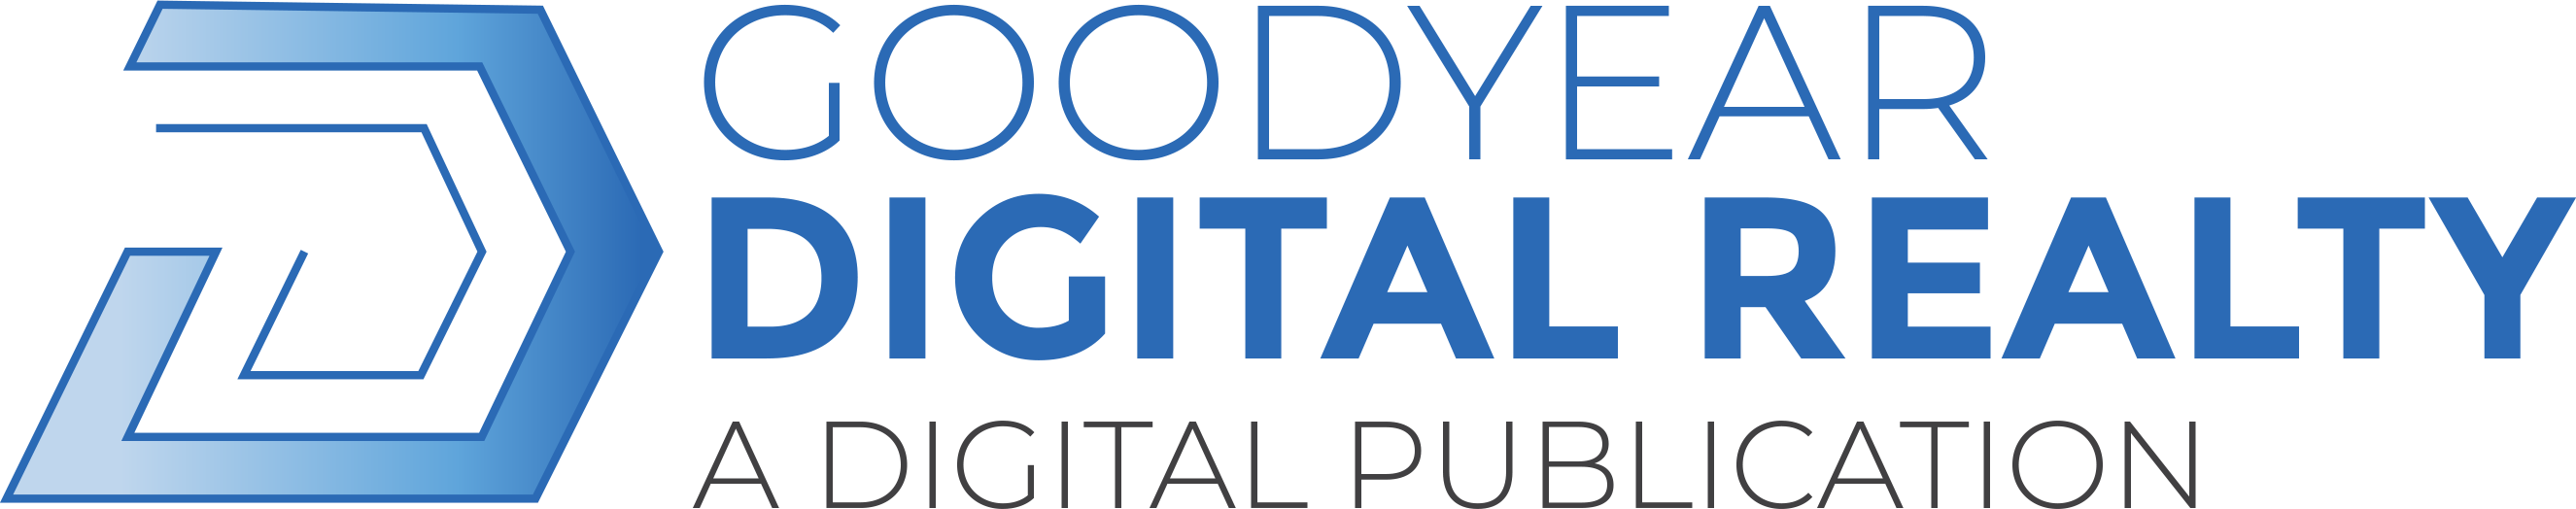 Goodyear Digital Realty Logo